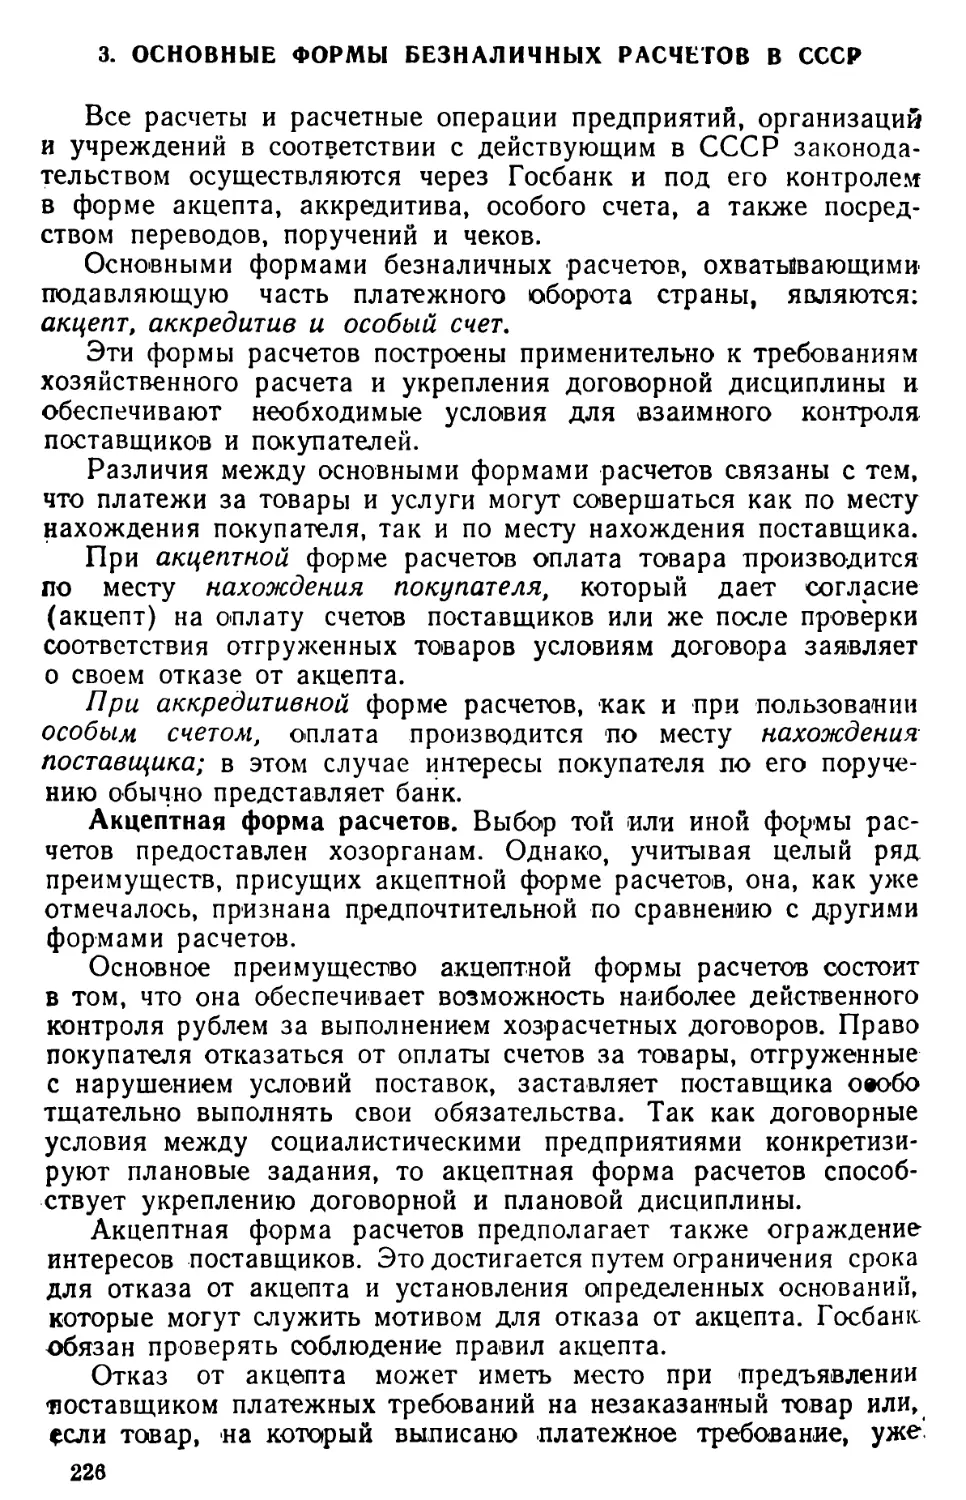 3. Основные формы безналичных расчетов в СССР